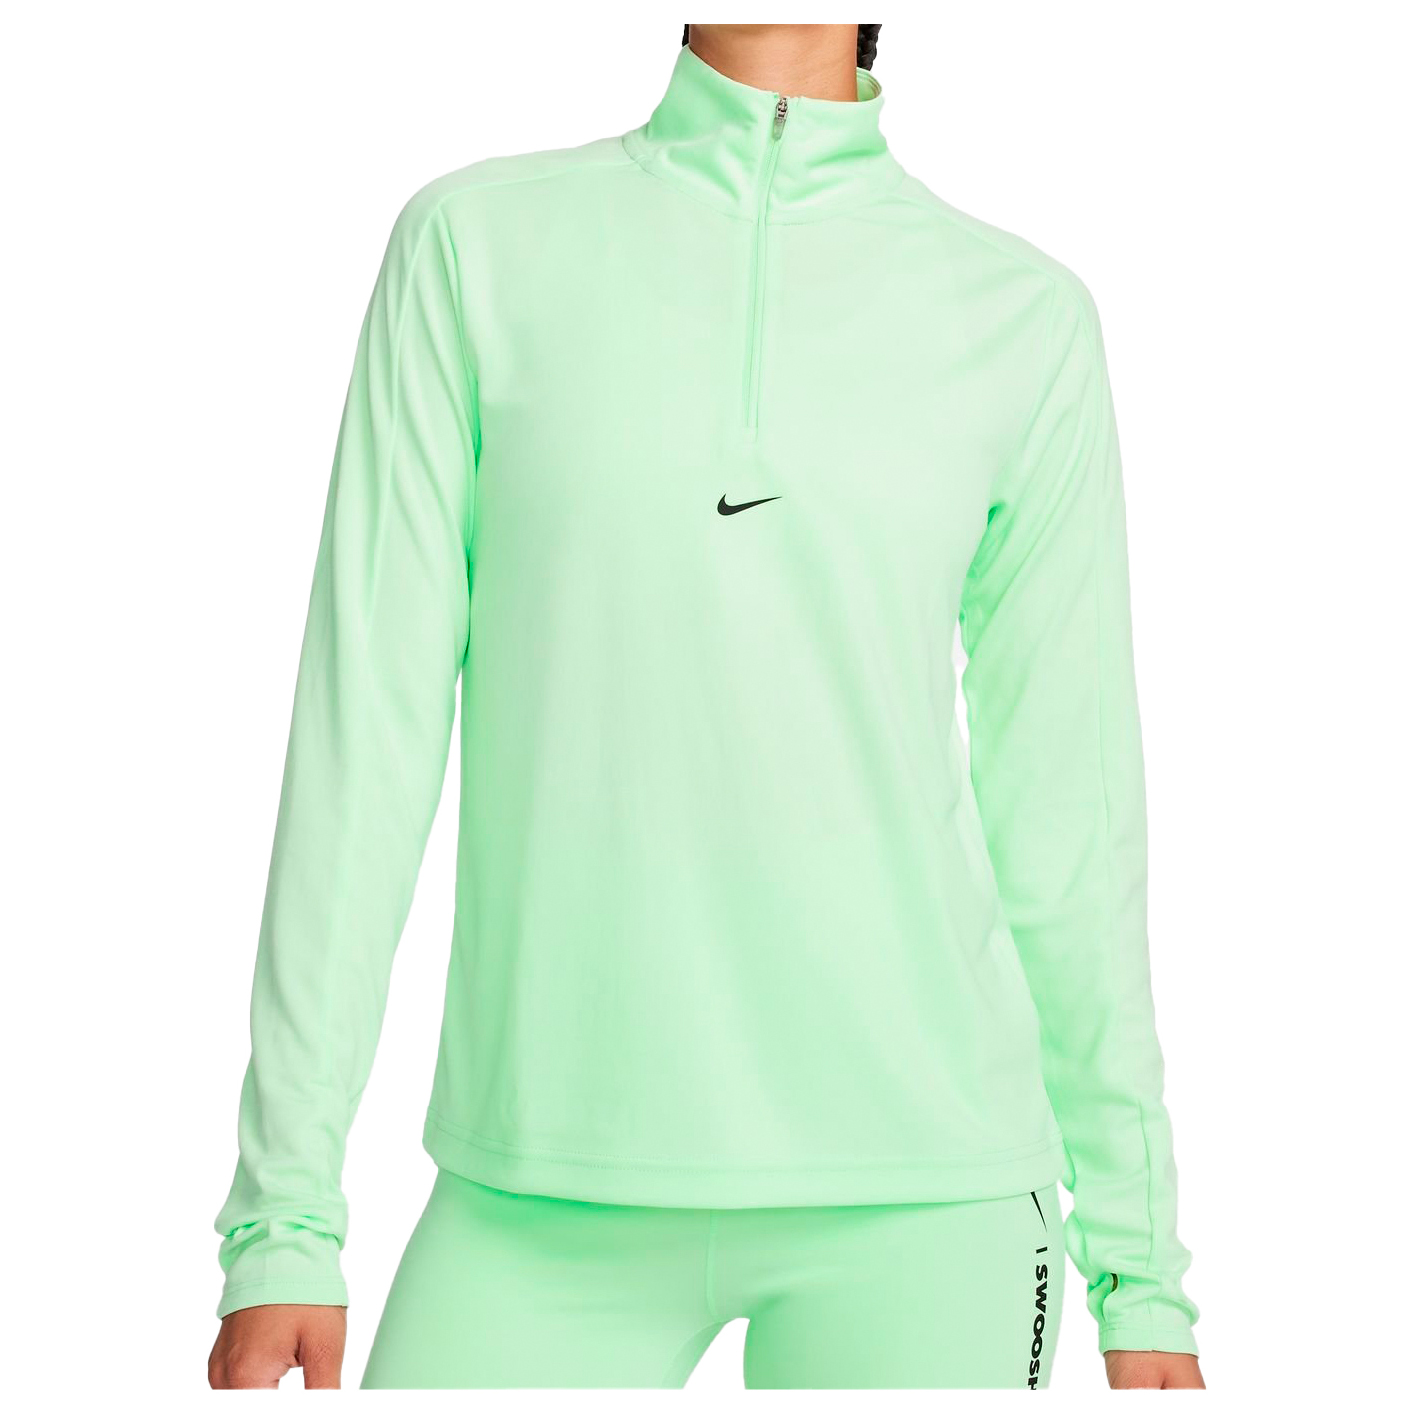 Функциональная рубашка Nike Women's Dri FIT Pacer Half Zip, цвет Vapor Green/Black коньки bauer vapor 3x int 4 fit 2